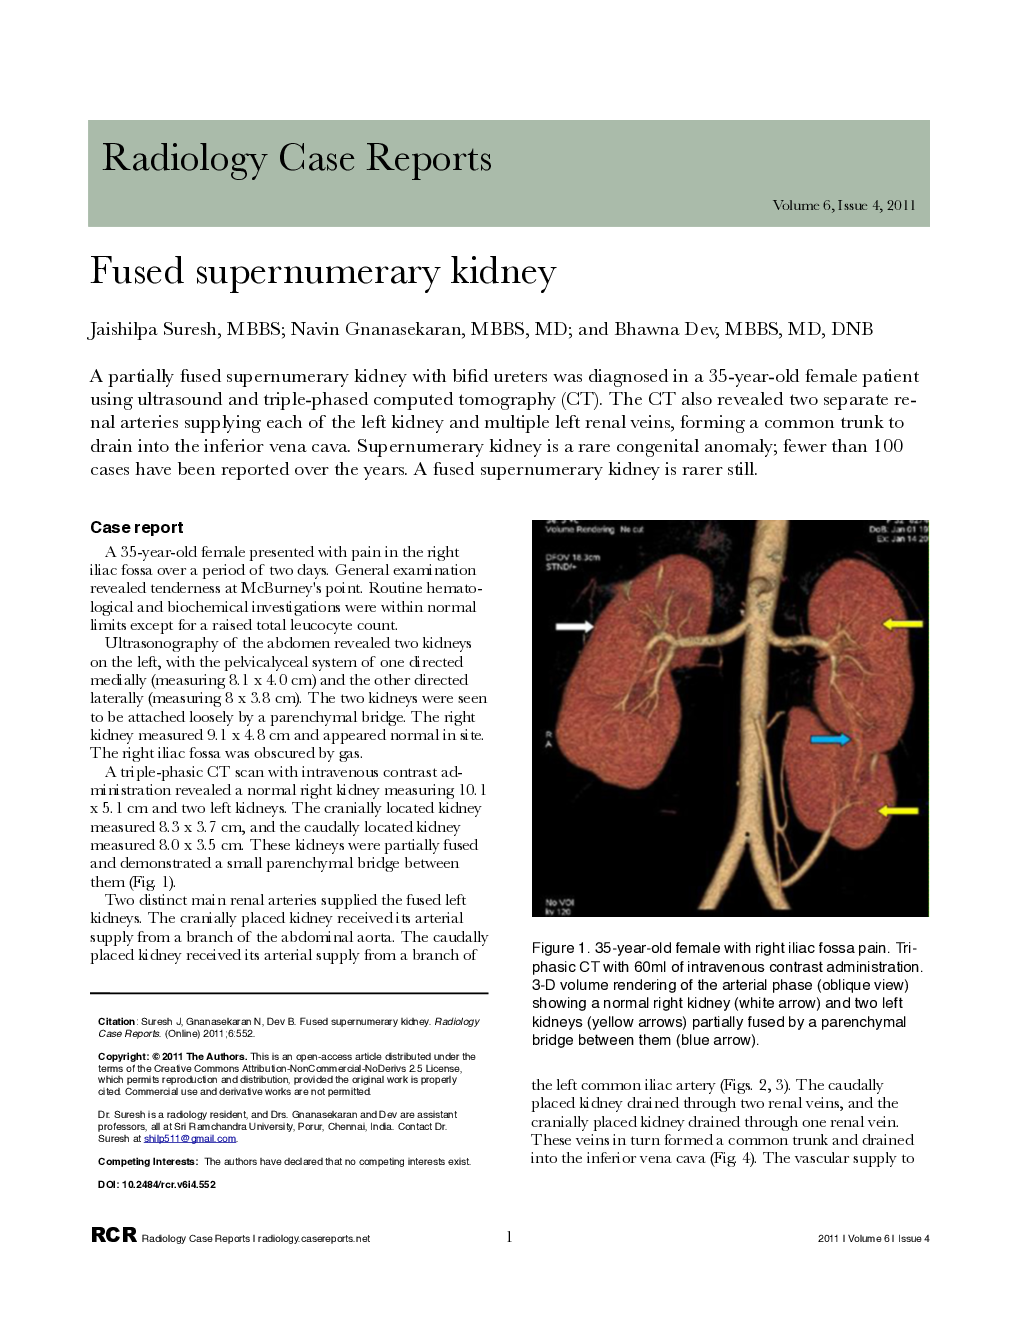 Fused supernumerary kidney